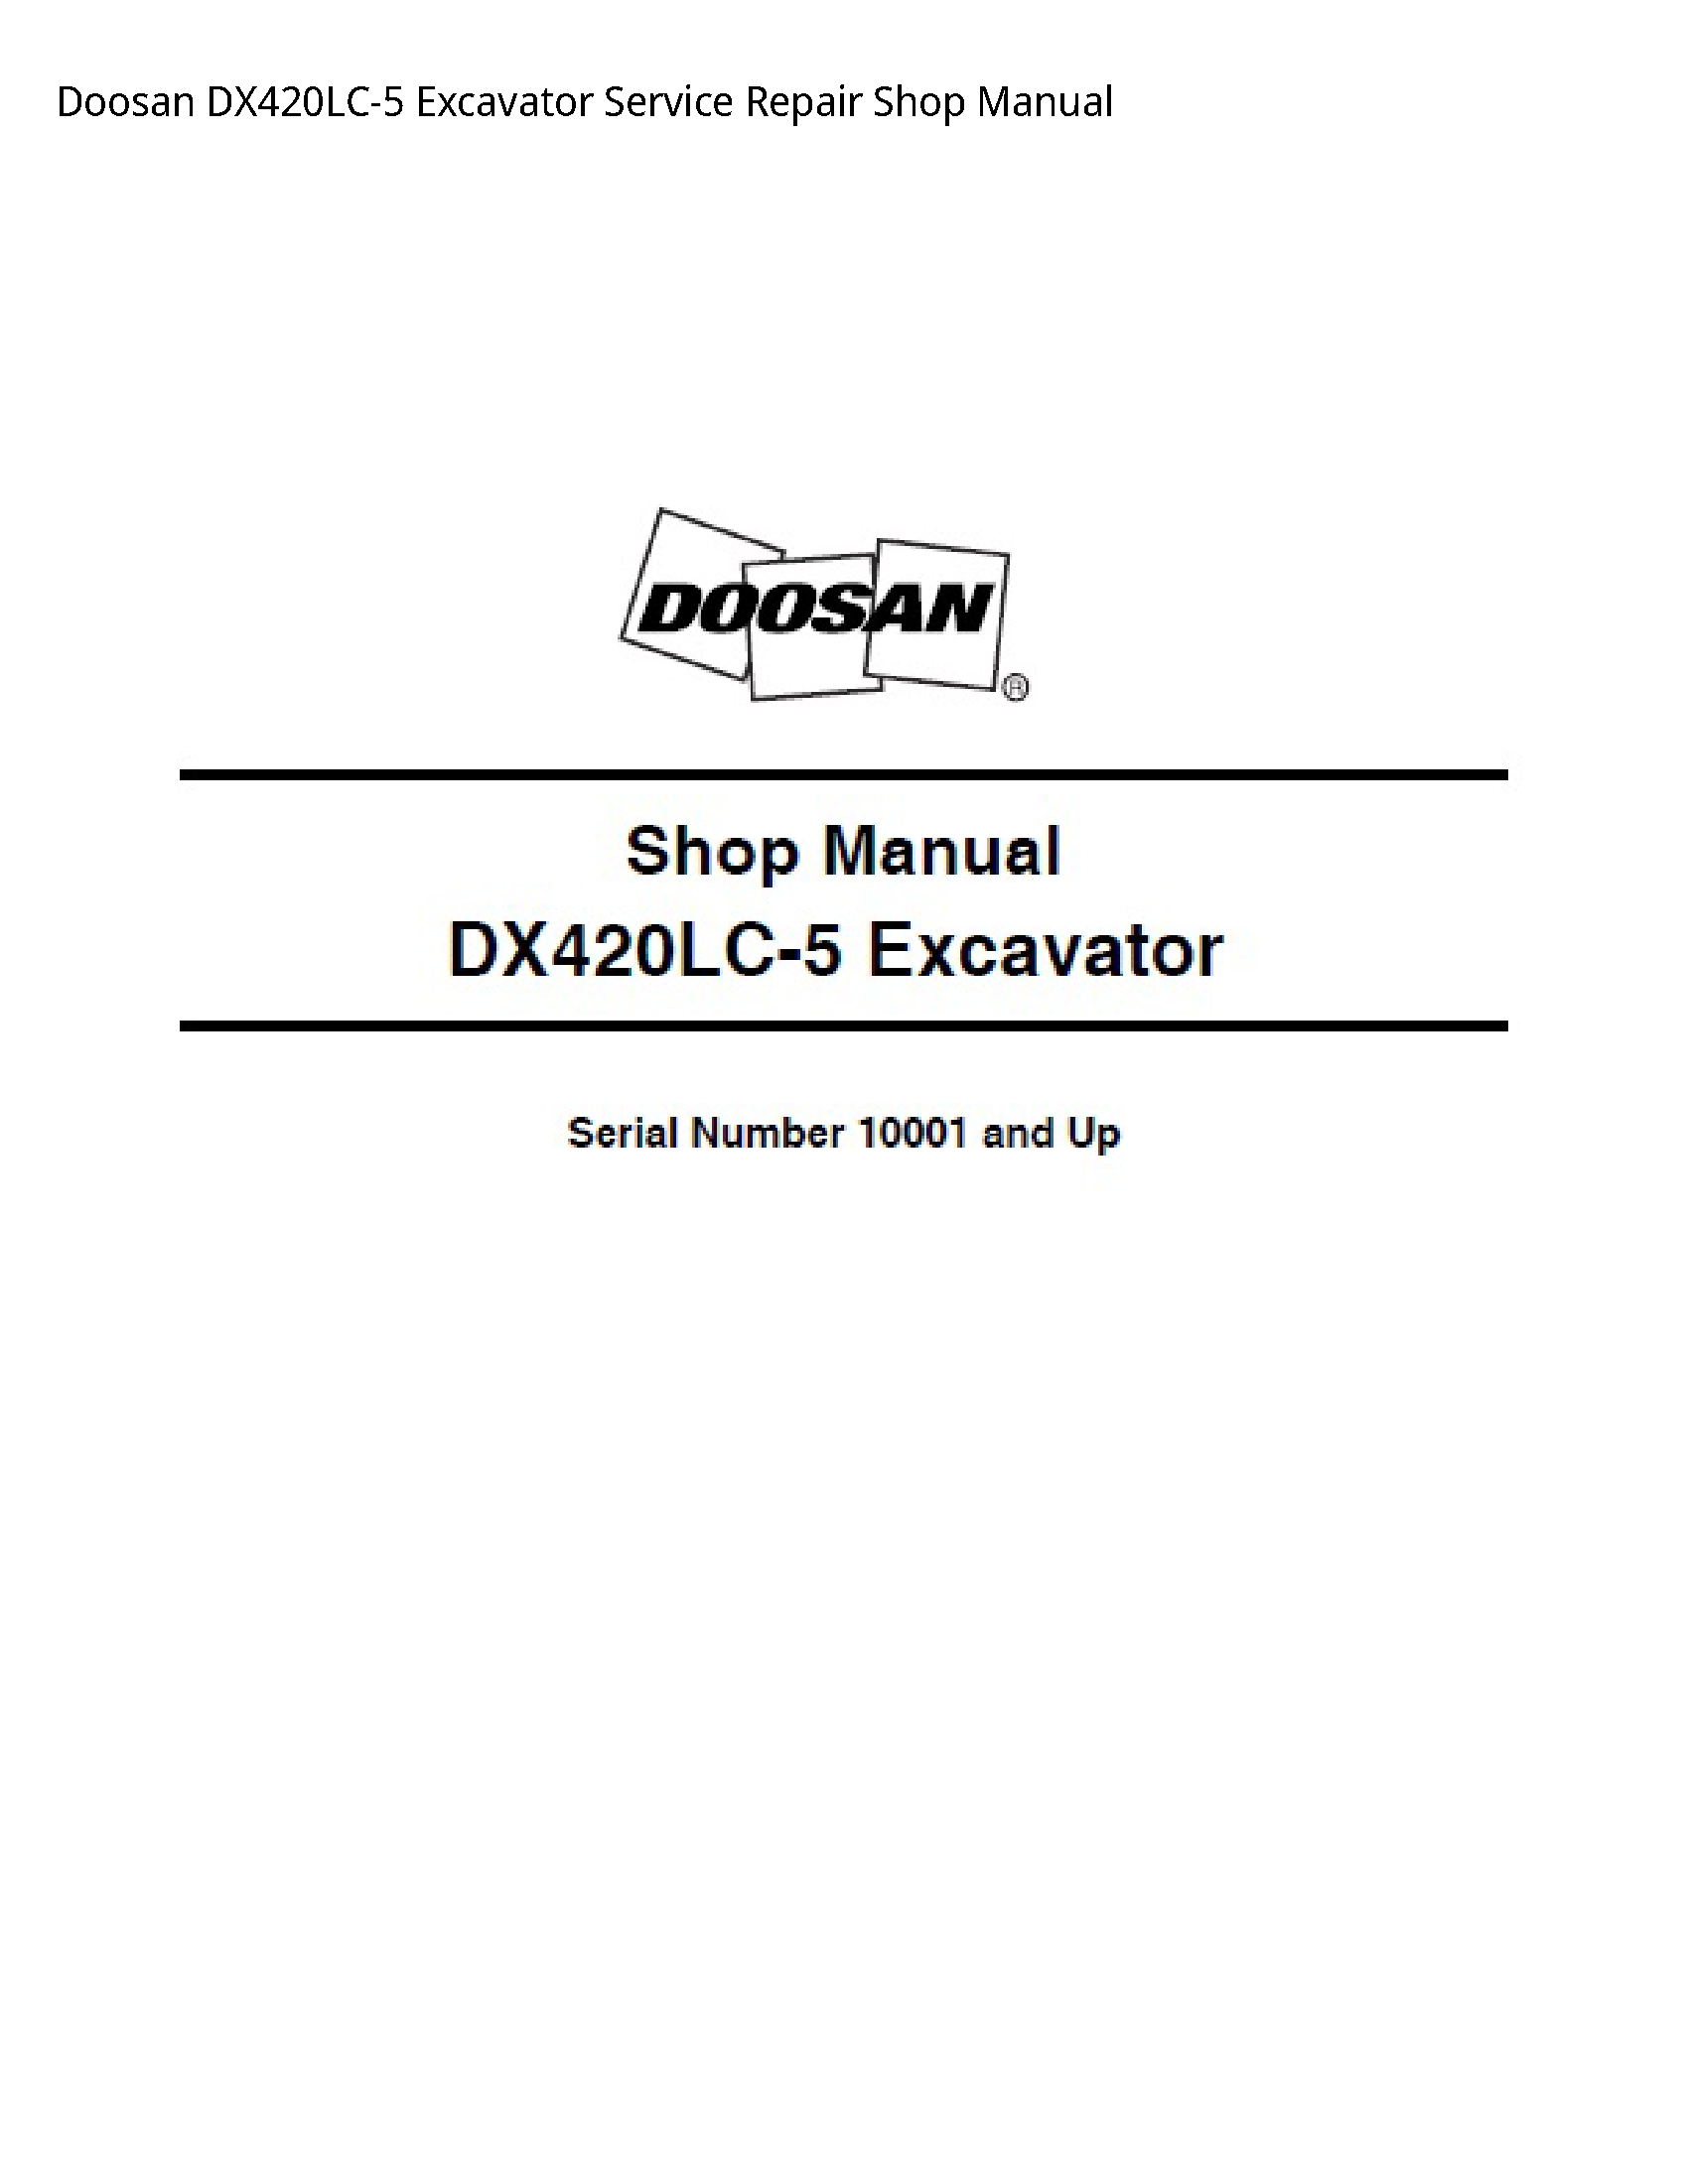 Doosan DX420LC-5 Excavator manual